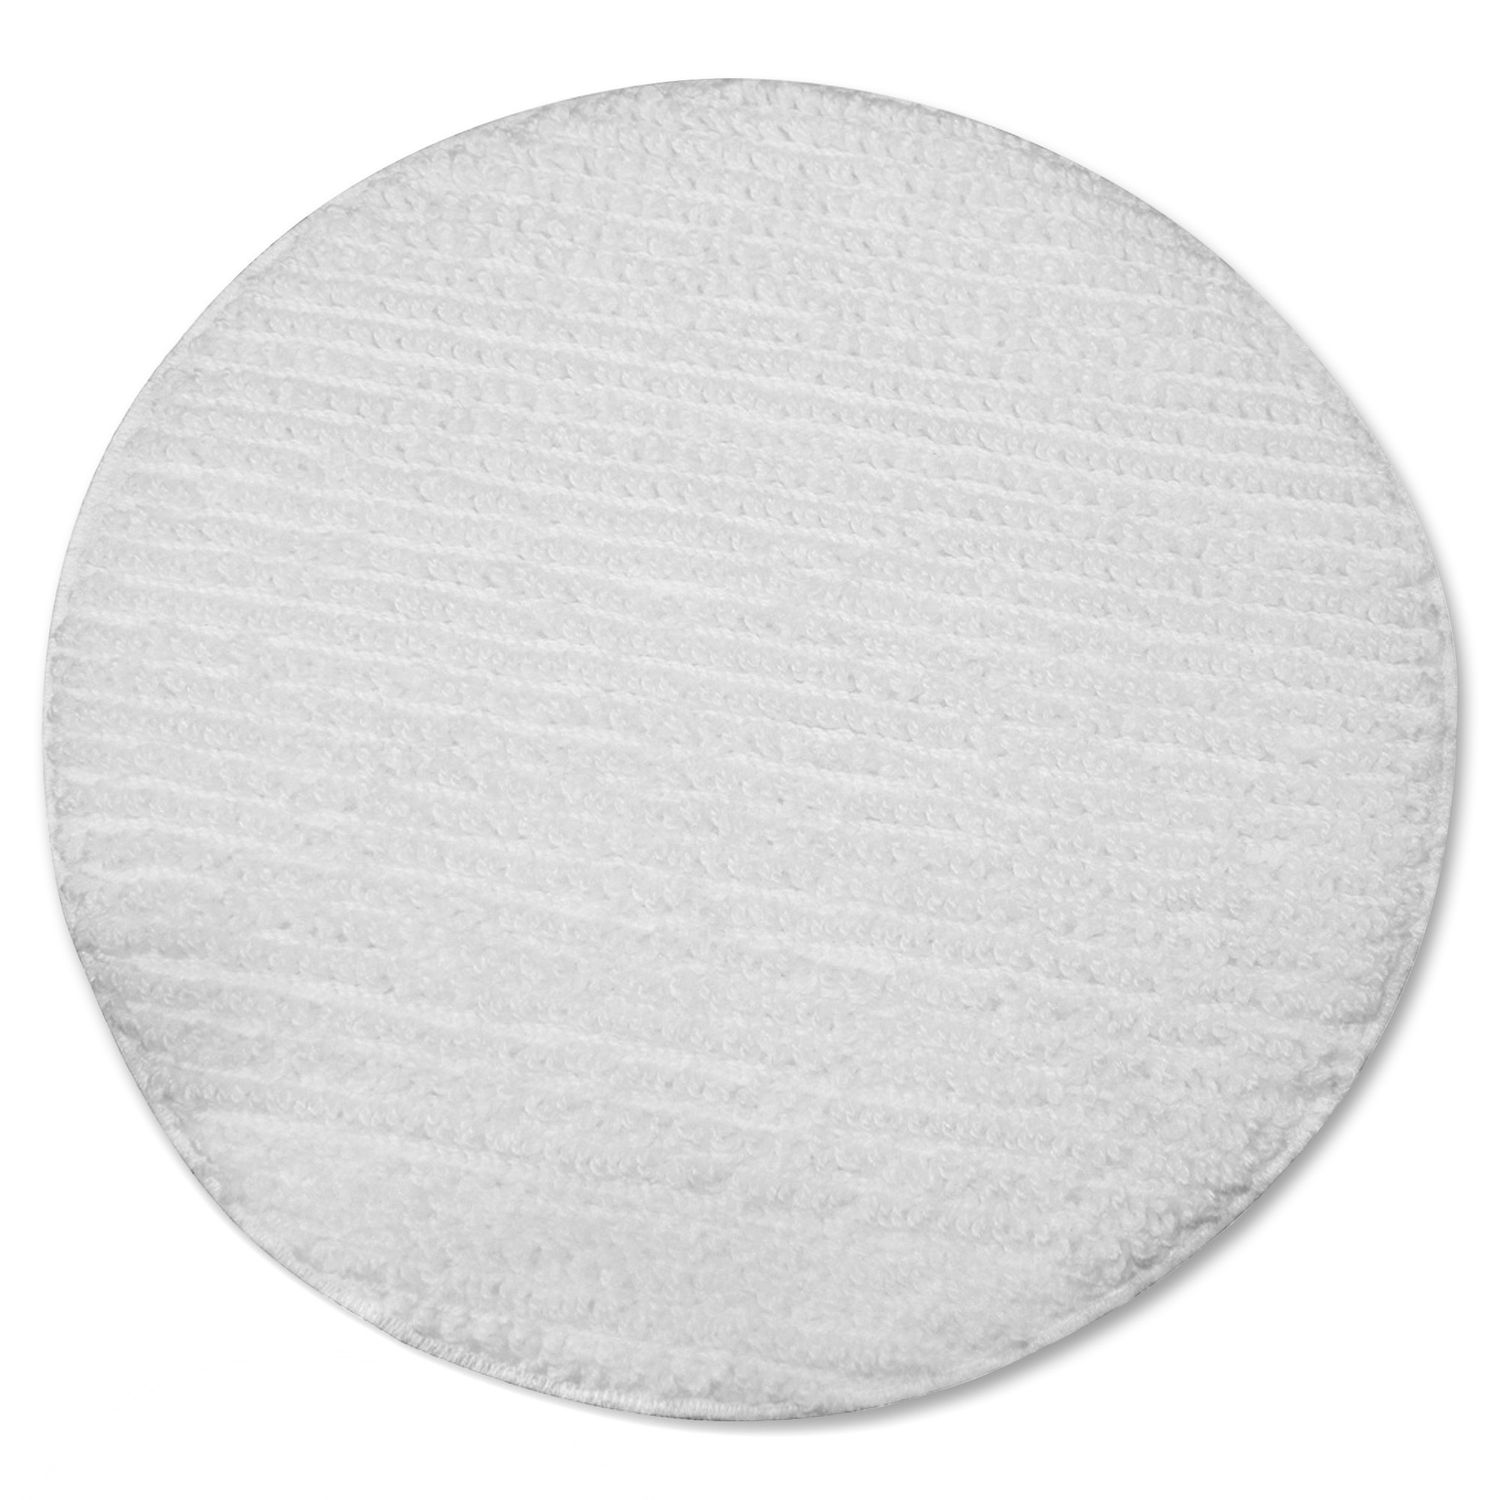 Low Profile Carpet Bonnet 1Each, 19" Width x 19" Depth, Polyester, White